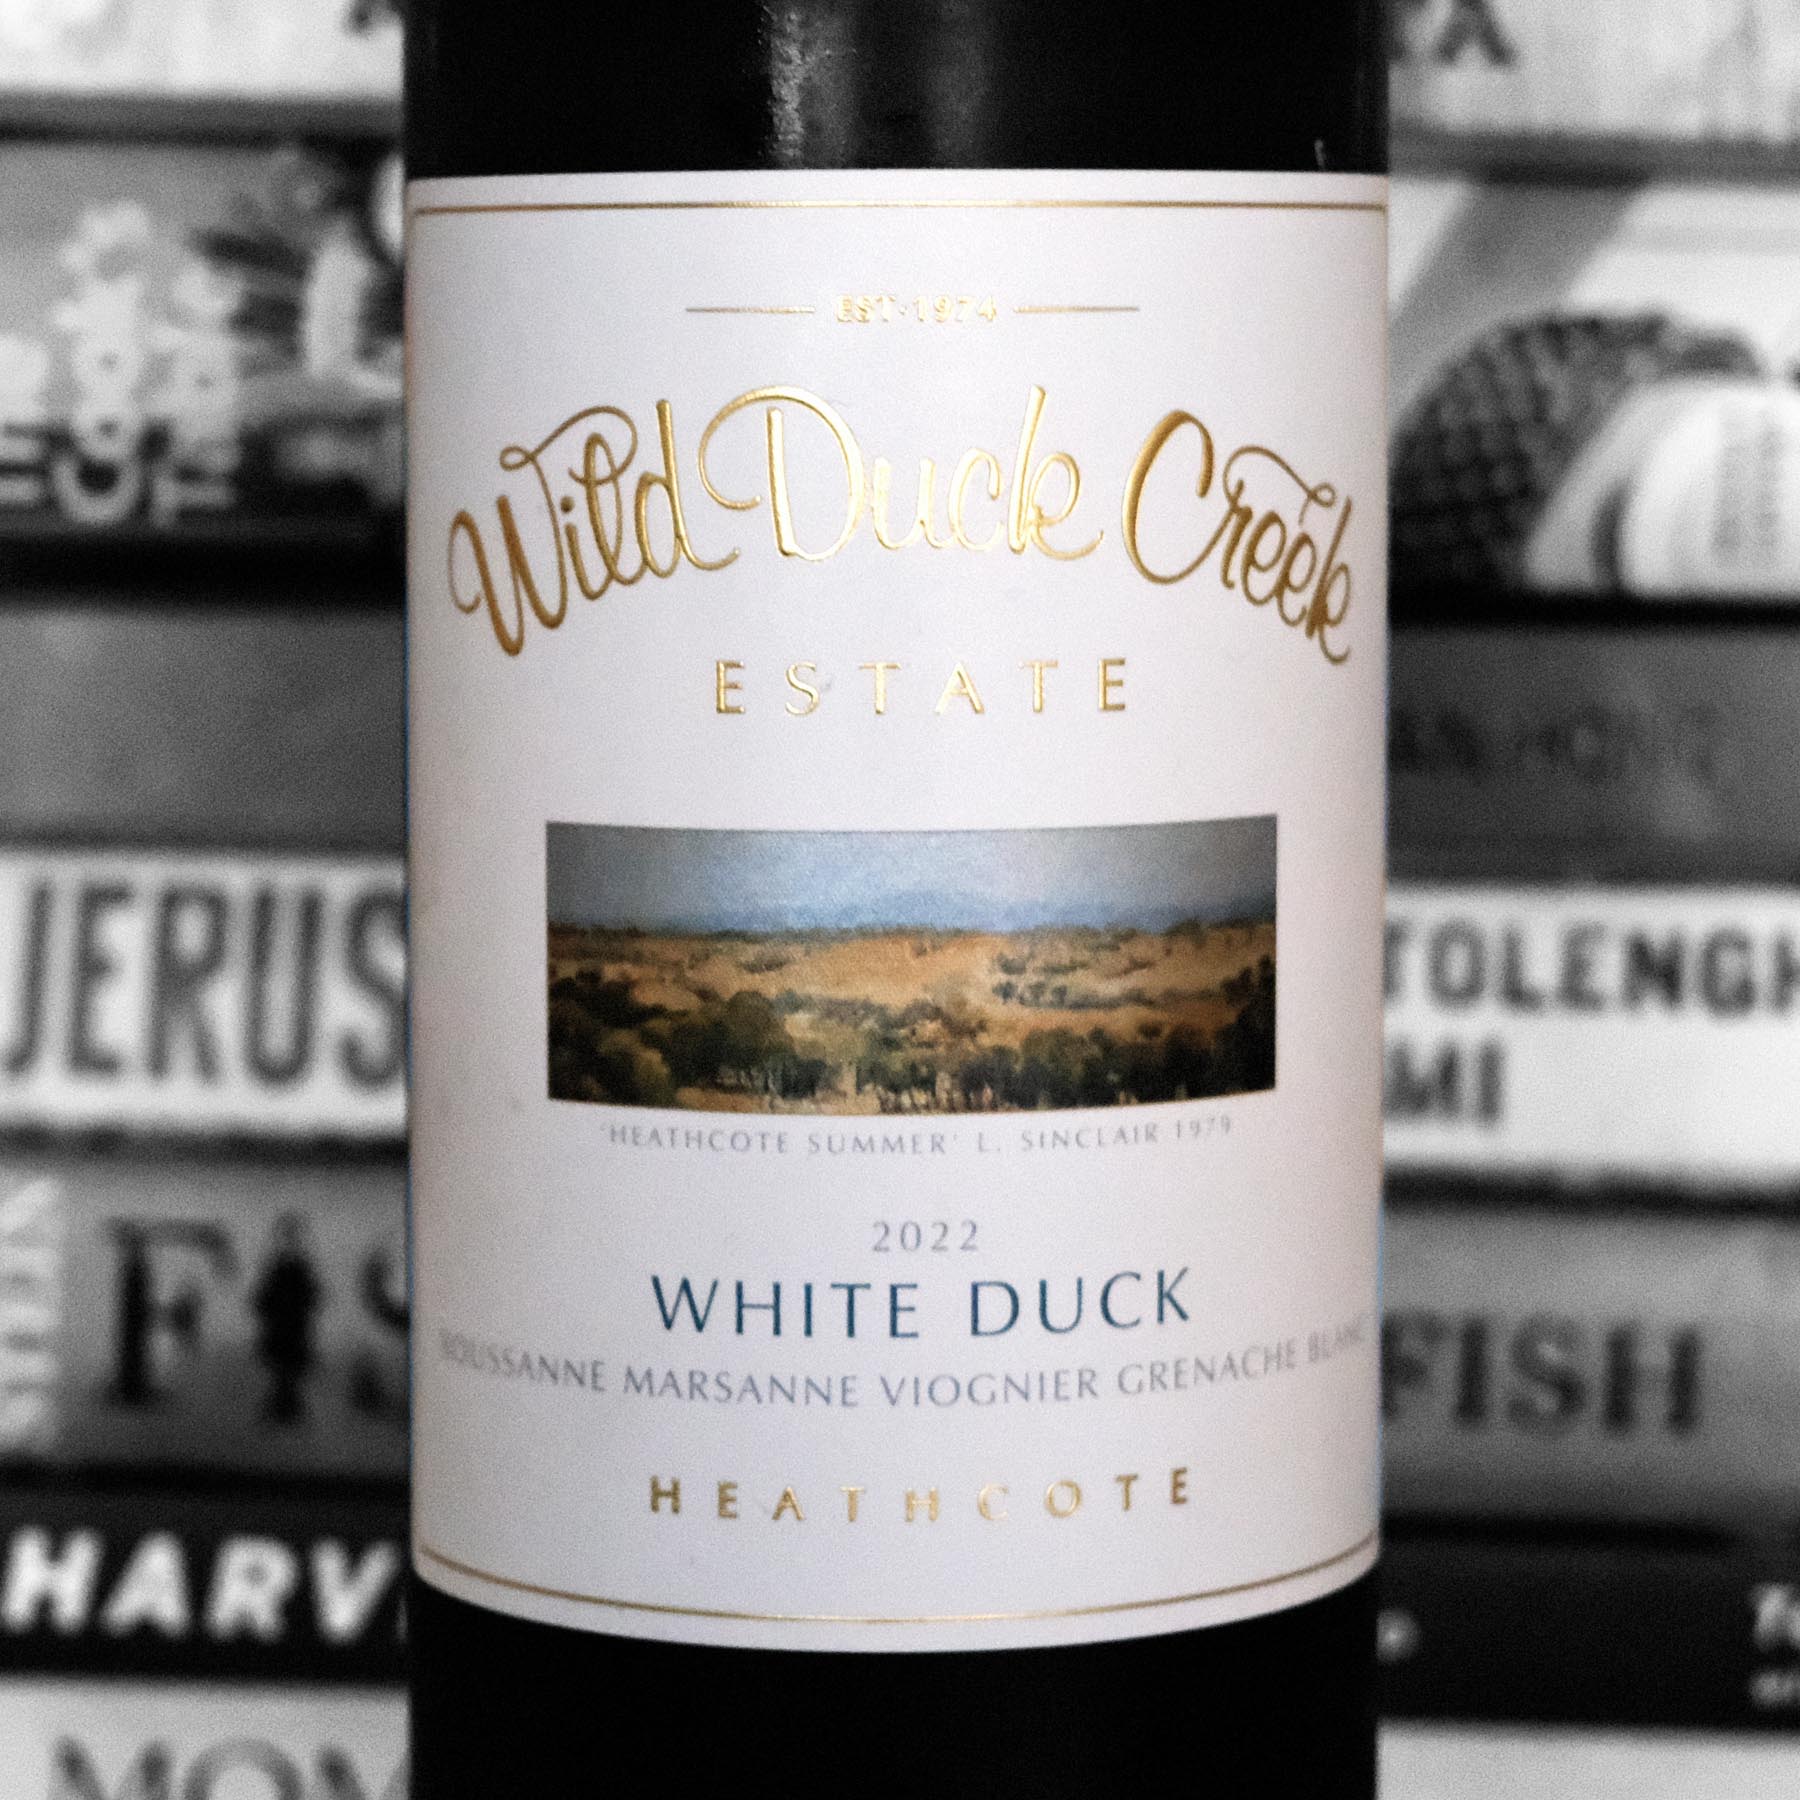 Wild Duck Creek Estate White Duck Roussanne Marsanne Viognier Grenache Blanc 2022 Heathcote, Vic